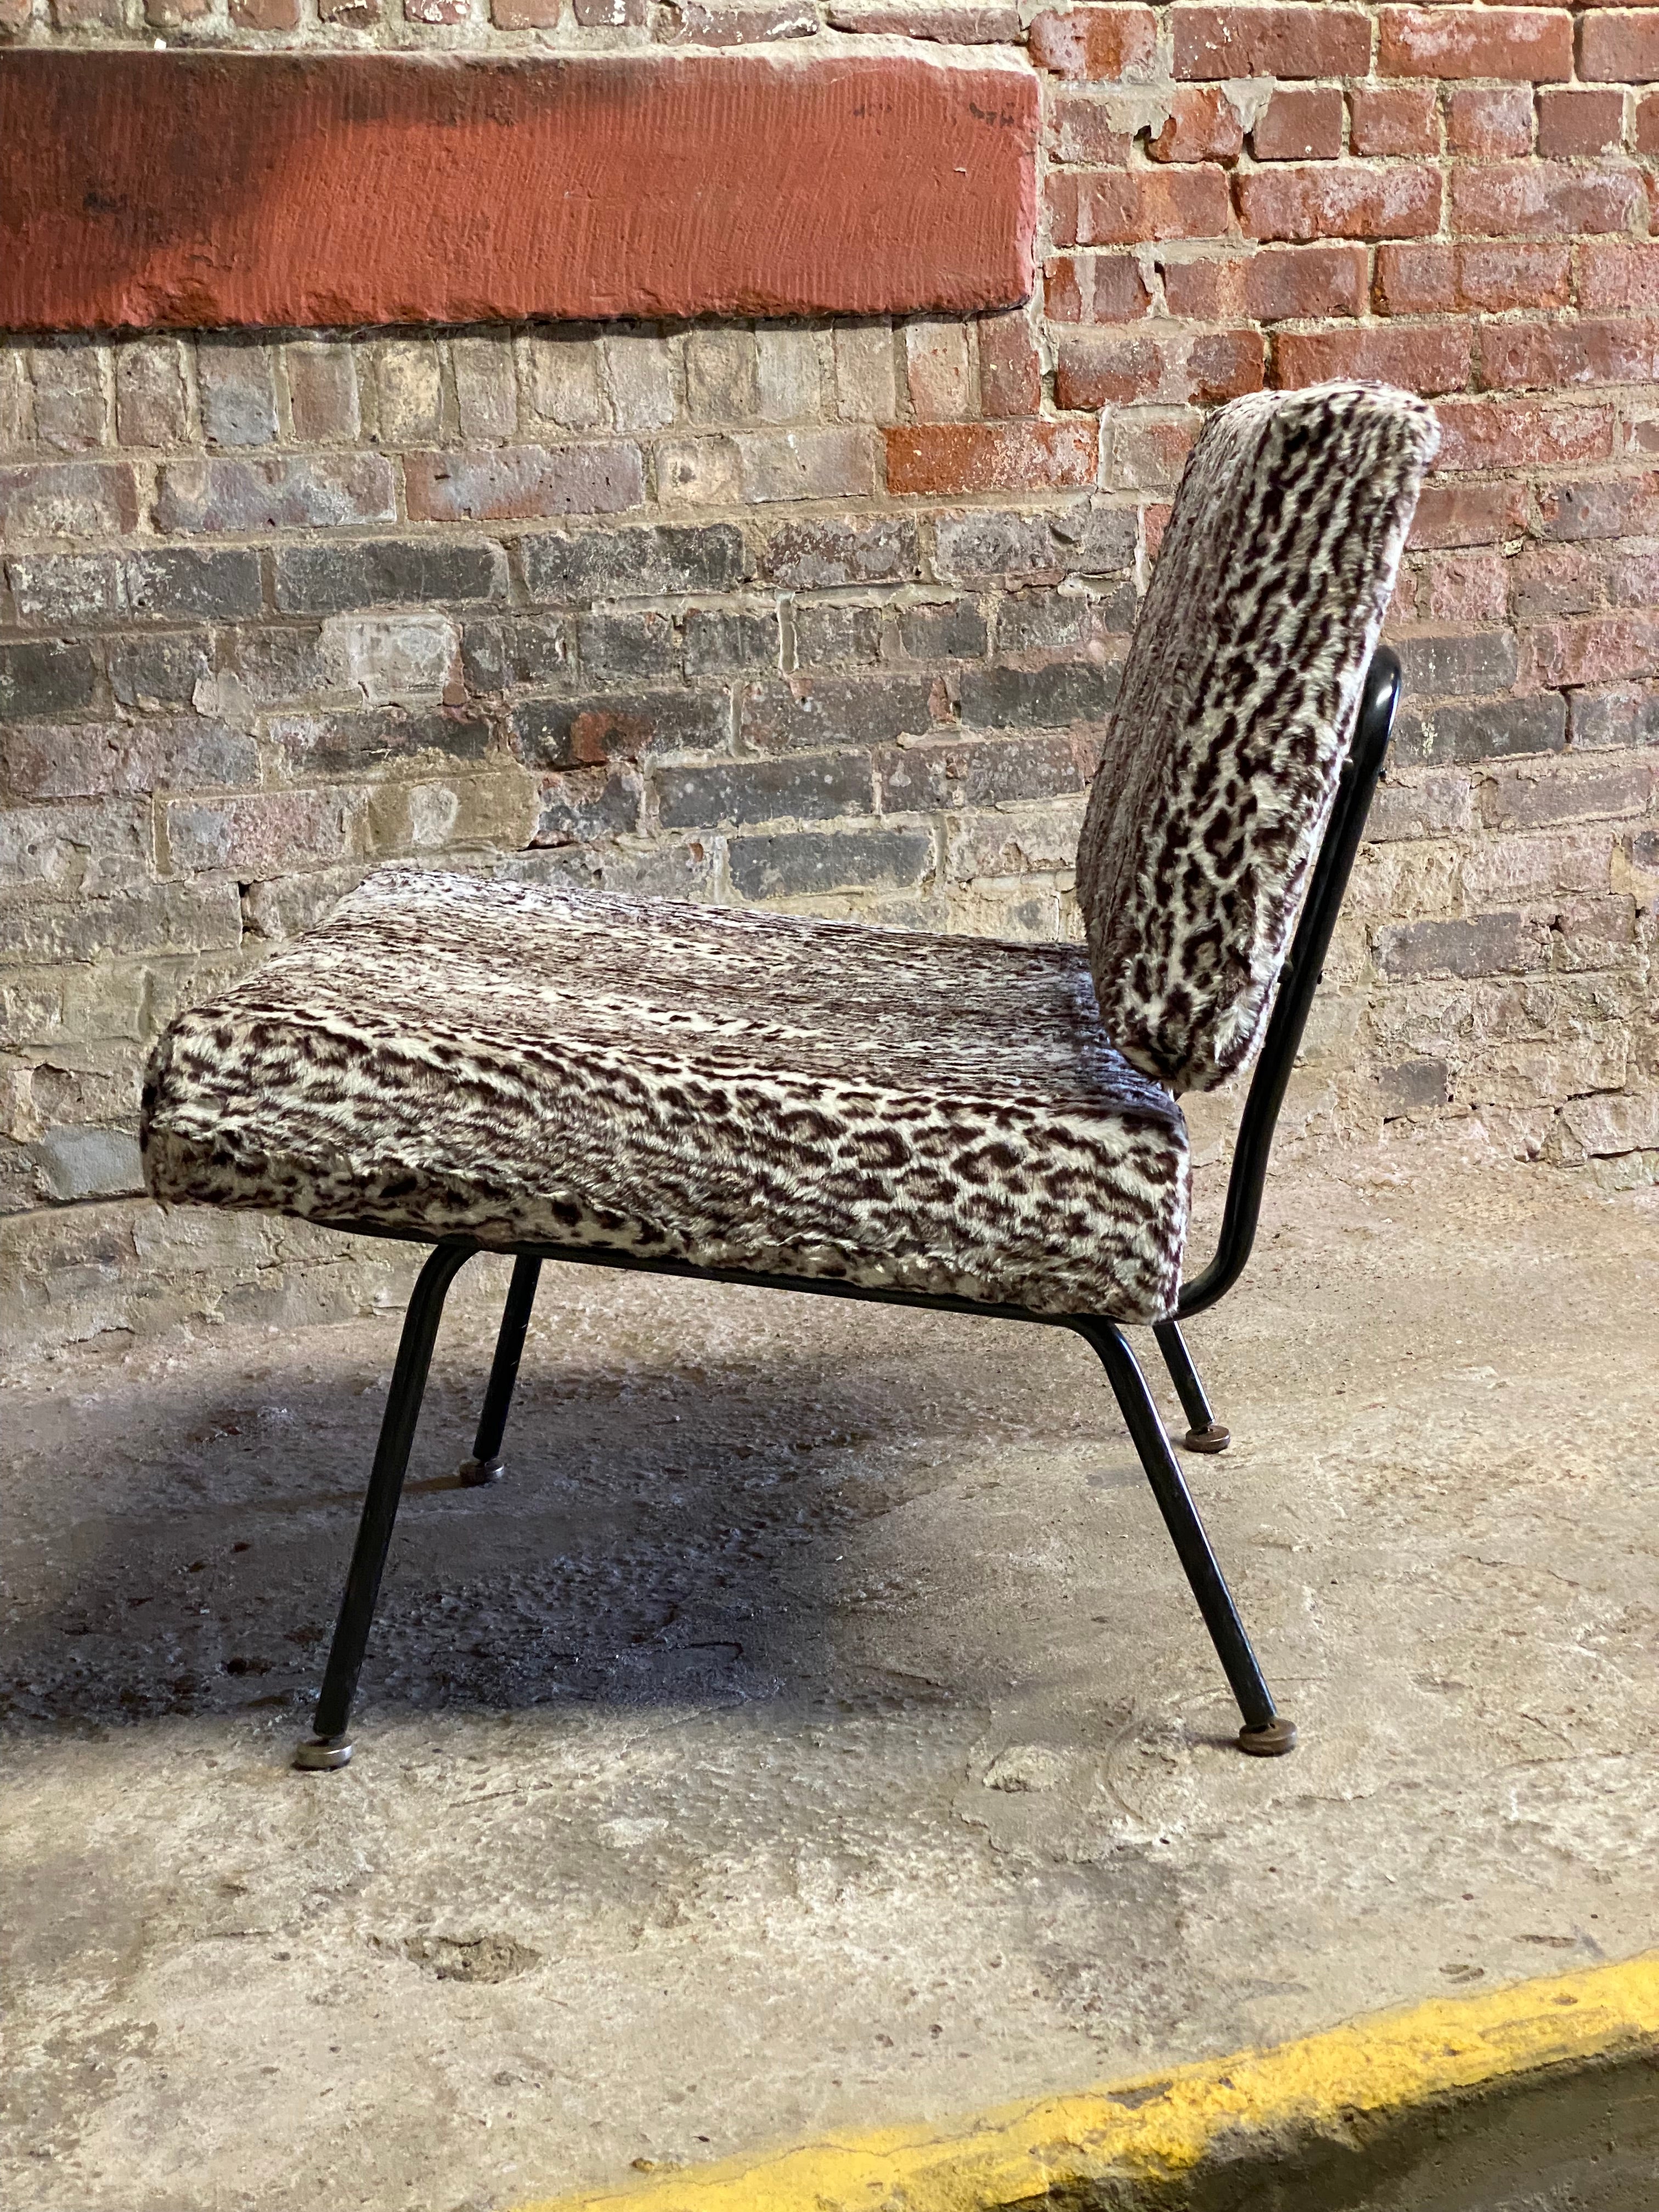 Chaise longue modèle 31 conçue par Florence Knoll (Florence Knoll Bassett), vers 1958-1962. Elle a conçu cette chaise en 1954 et elle a été produite jusqu'en 1968. Structure en acier émaillé noir avec dossier et assise rembourrés. L'excellence dans